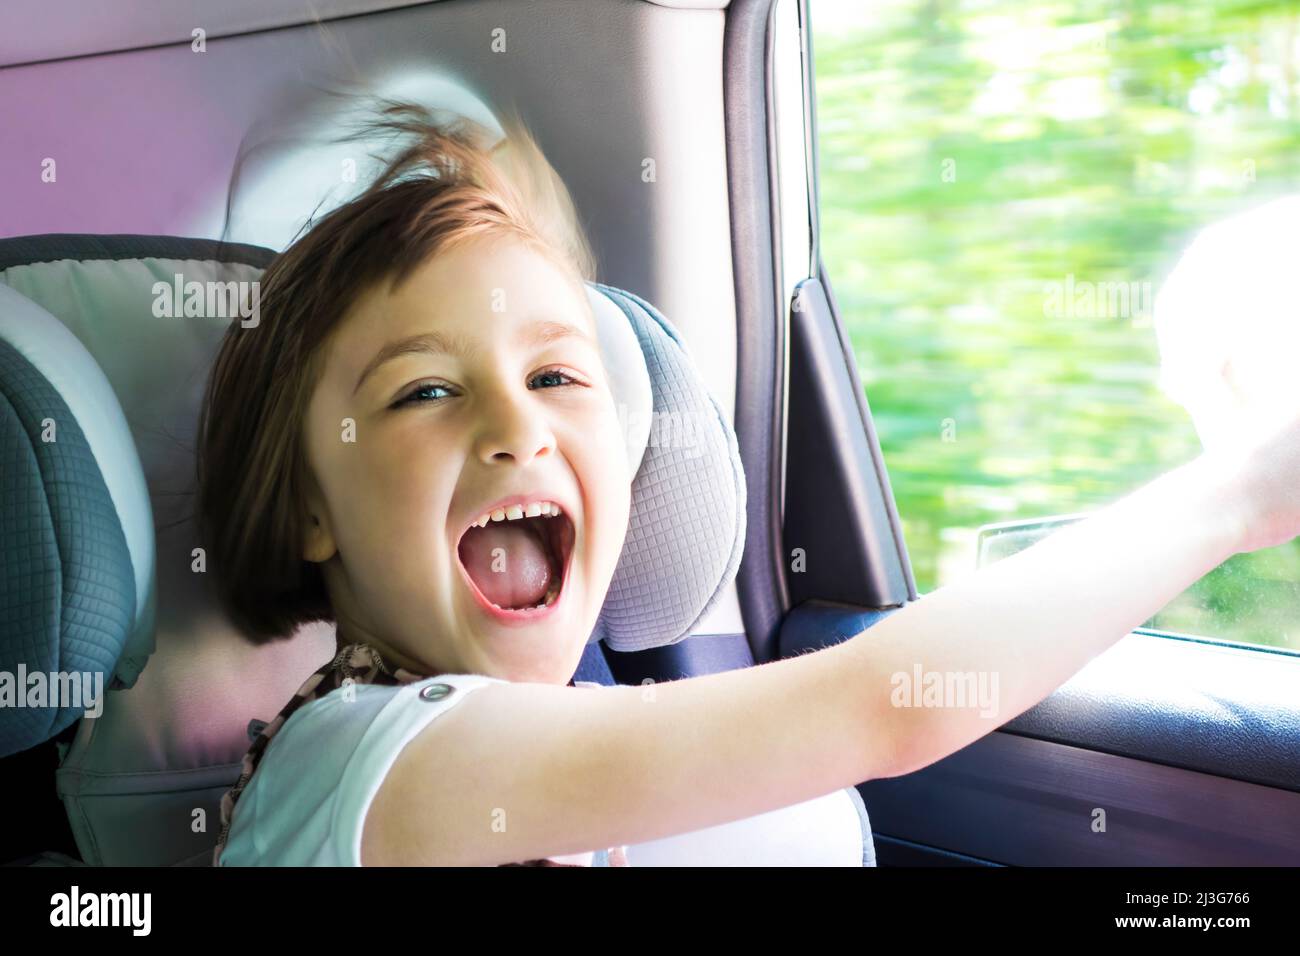 Piccola ragazza felice in un'auto vicino alla finestra aperta. Bambini in viaggio. Profondità di campo poco profonda. Foto Stock